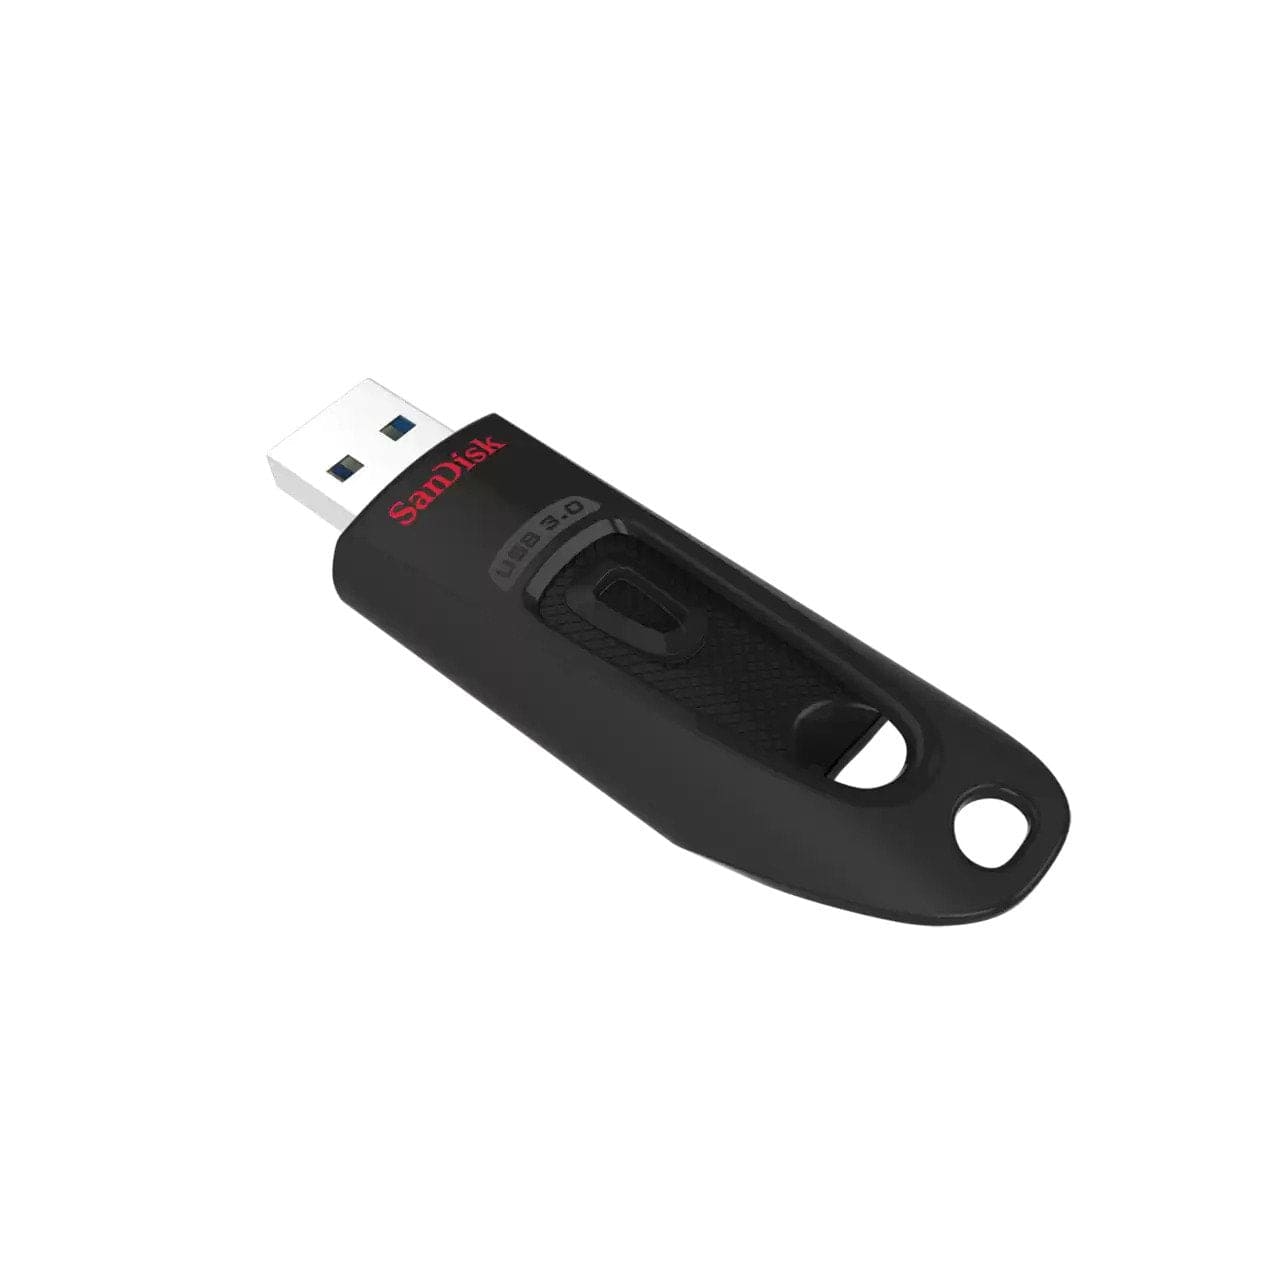 SanDisk Ultra USB 3.0 Flash Drive - The Pi Hut